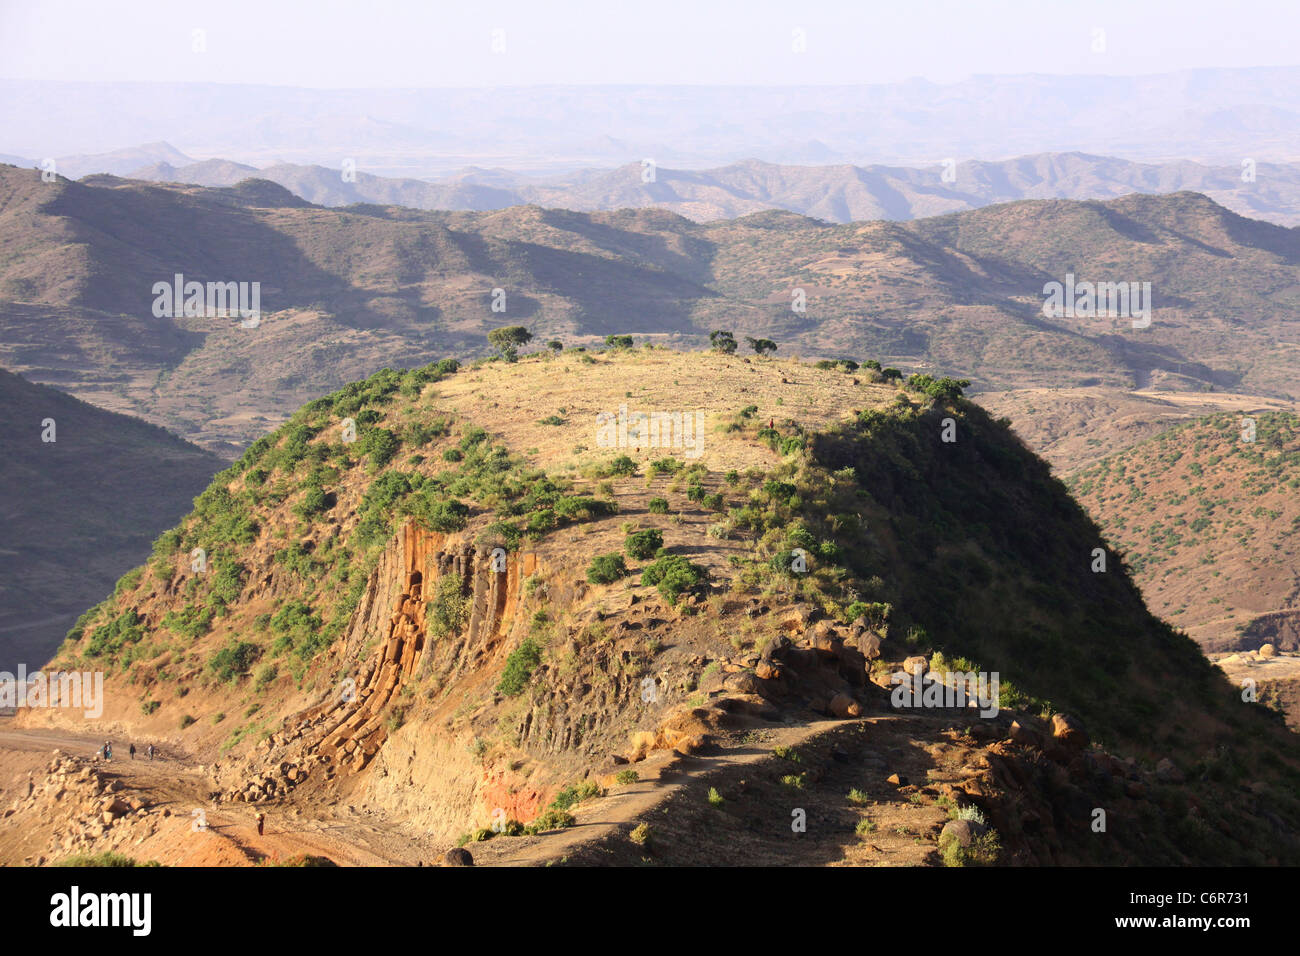 Una vista panoramica di una montagna con le gamme della montagna in background Foto Stock